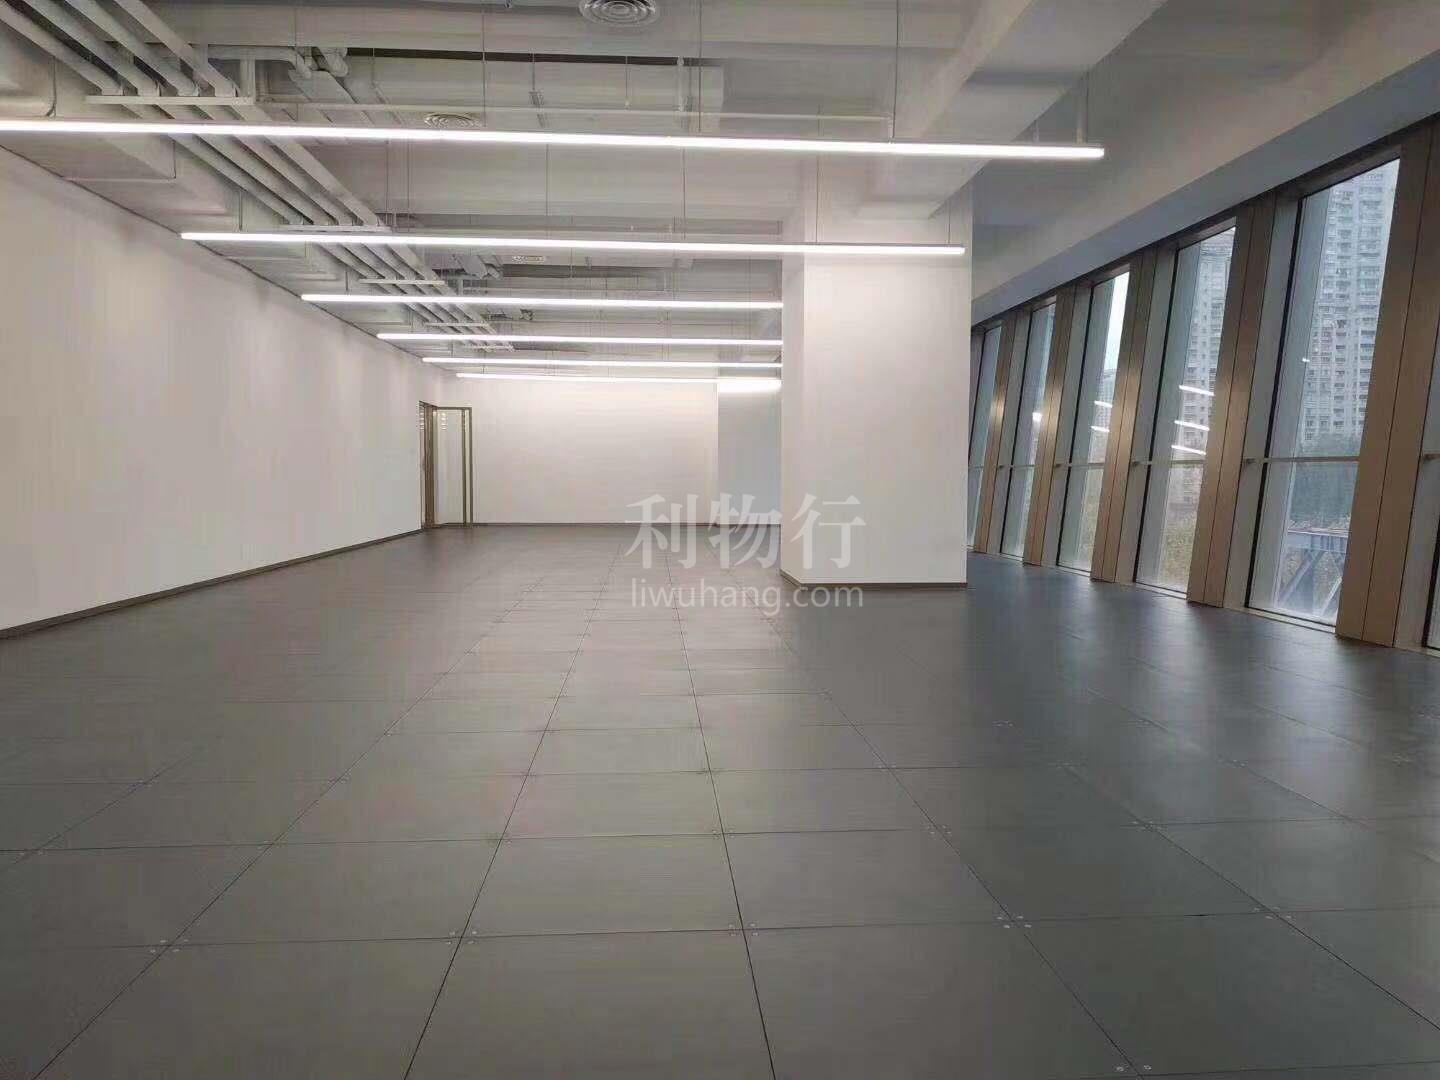 世贸商城写字楼480m2办公室5.80元/m2/天 中等装修